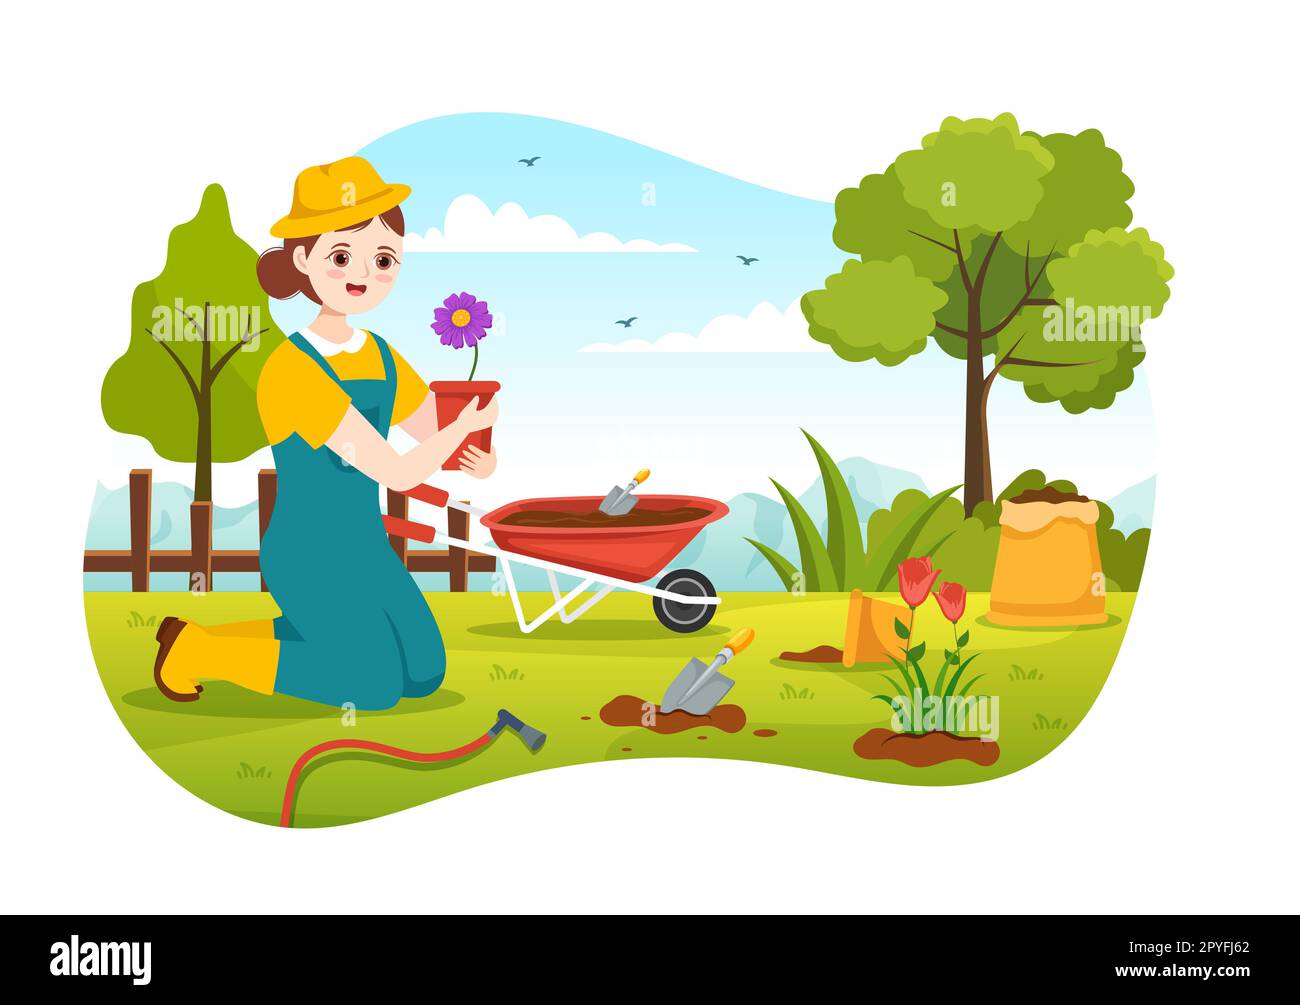 Gärtner Illustration mit Gartengeräten, Landwirtschaft, baut Gemüse im botanischen Sommergarten flache Cartoon, handgezeichnet für Landing Page Templates an Stockfoto